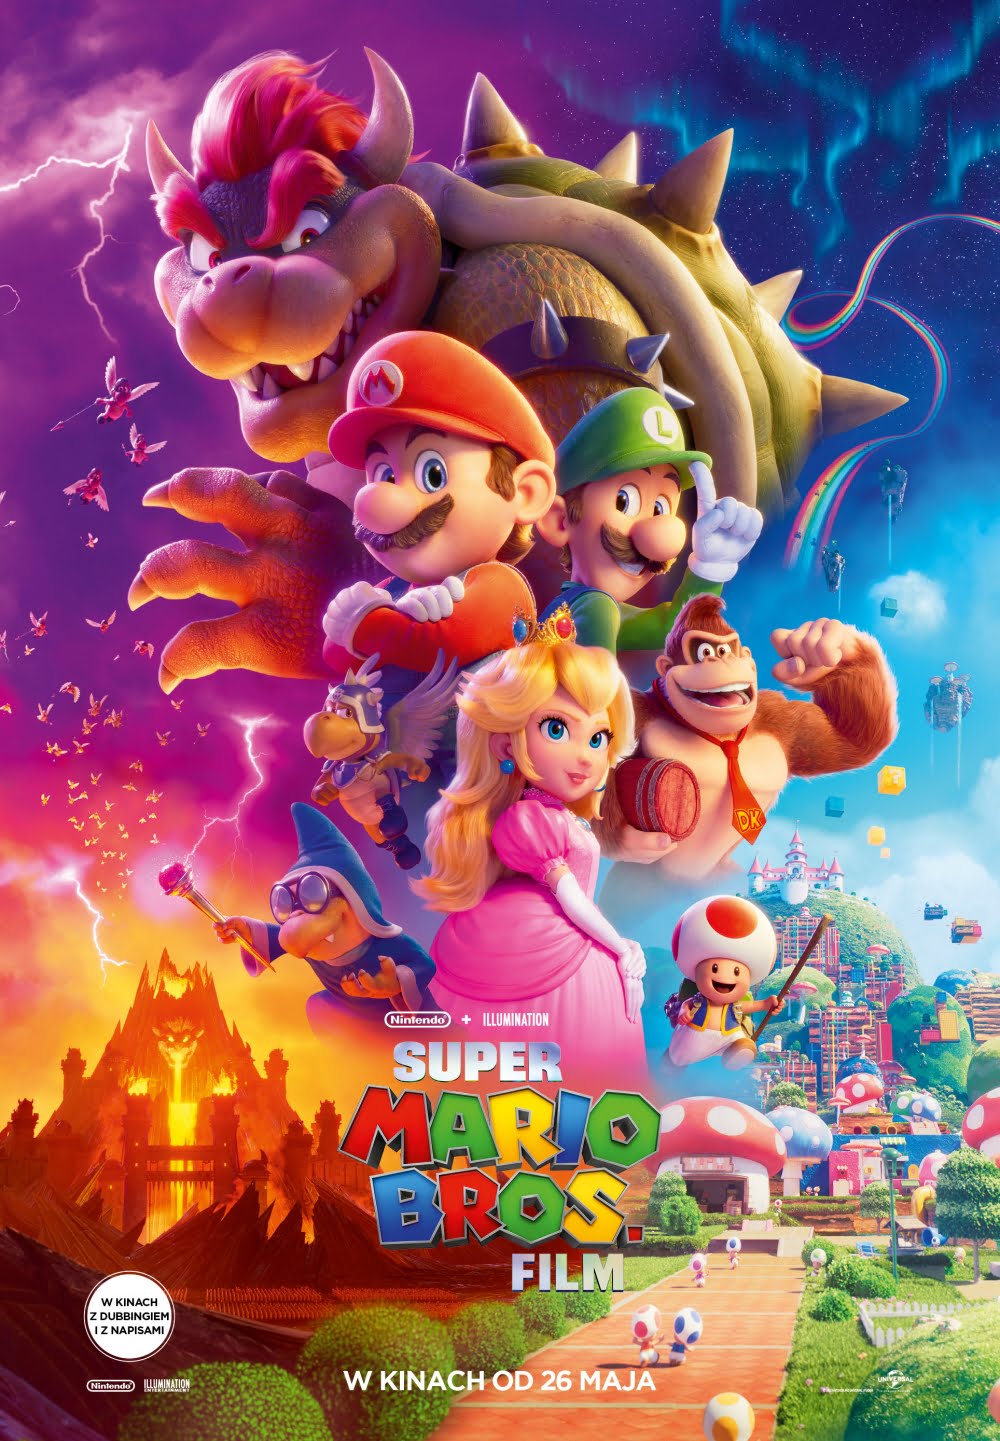 Super Mario Bros. Film (488264)